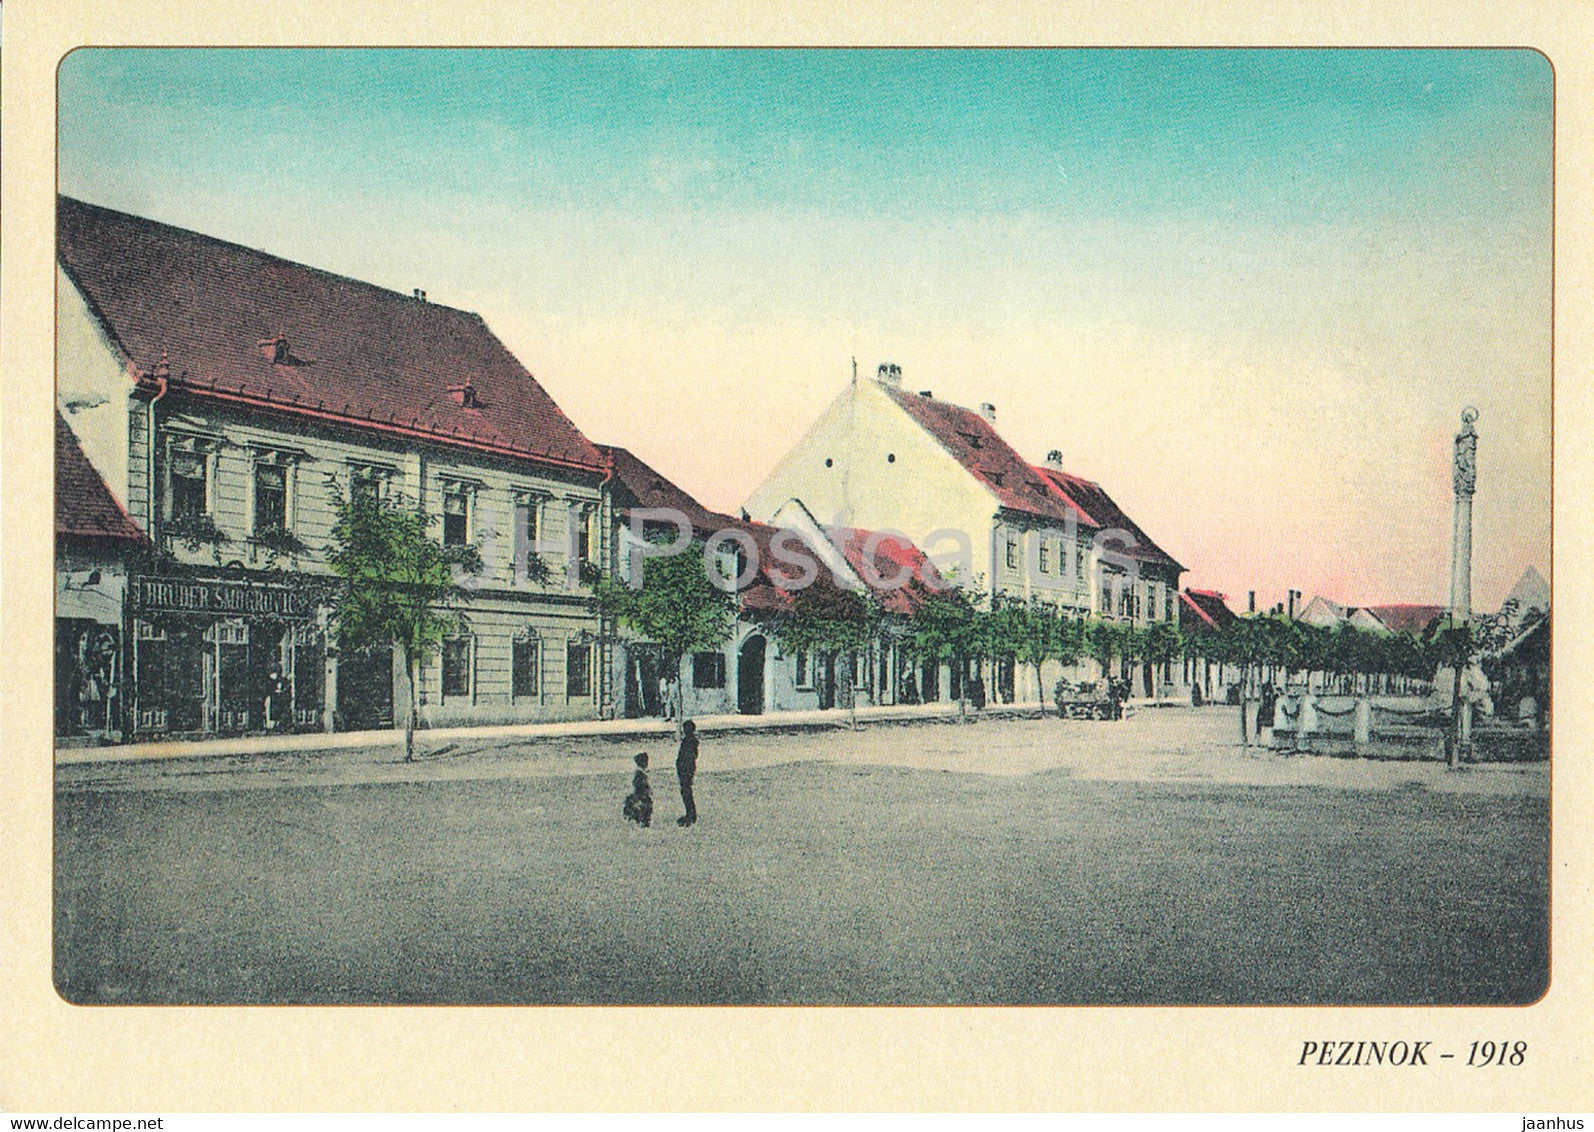 Pezinok 1918 - REPRODUCTION - 1998 - Slovakia - used - JH Postcards